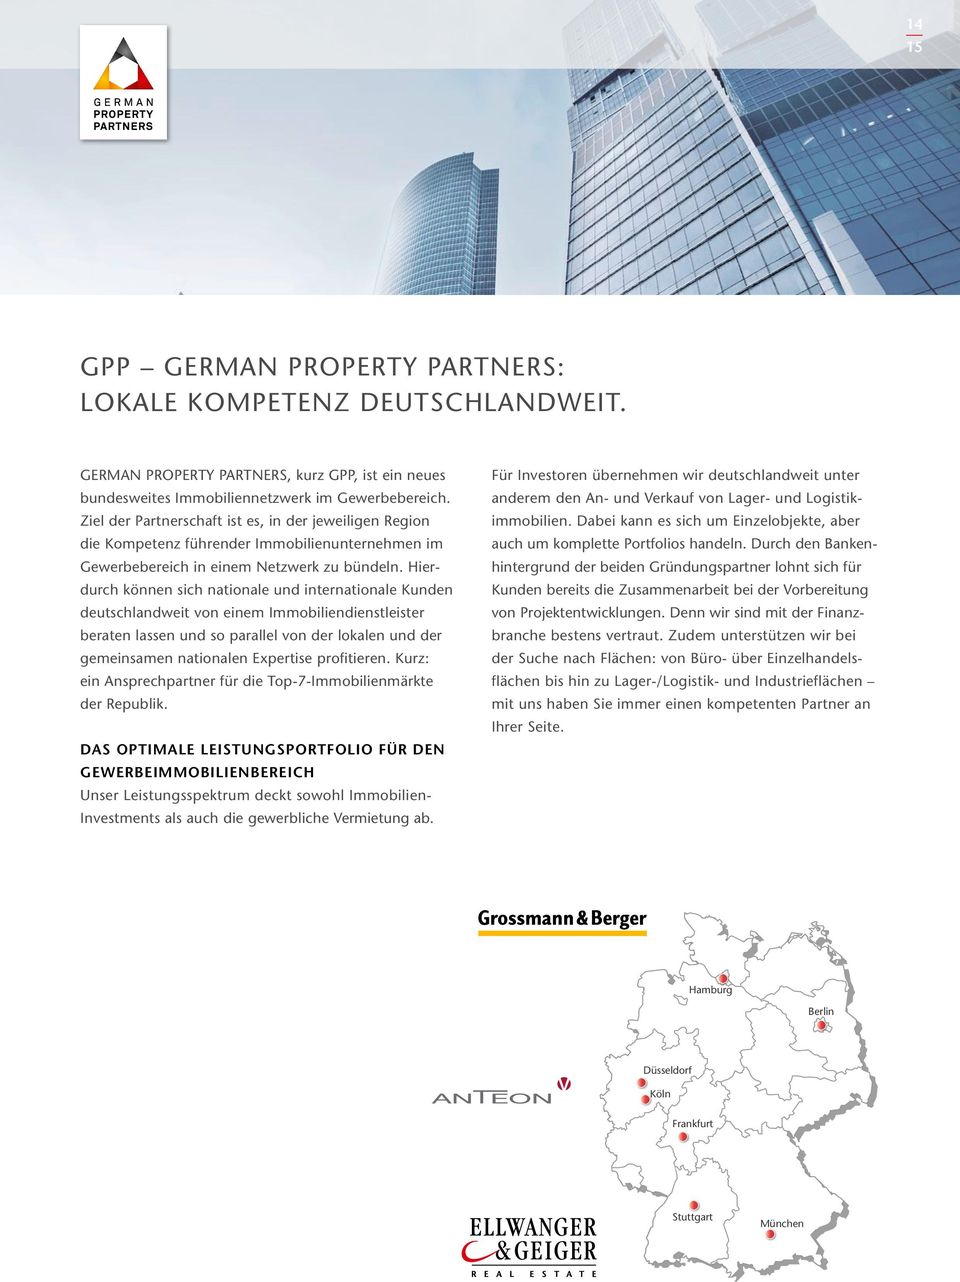 Hierdurch können sich nationale und internationale Kunden deutschlandweit von einem Immobiliendienstleister be raten lassen und so parallel von der lokalen und der gemeinsamen nationalen Expertise